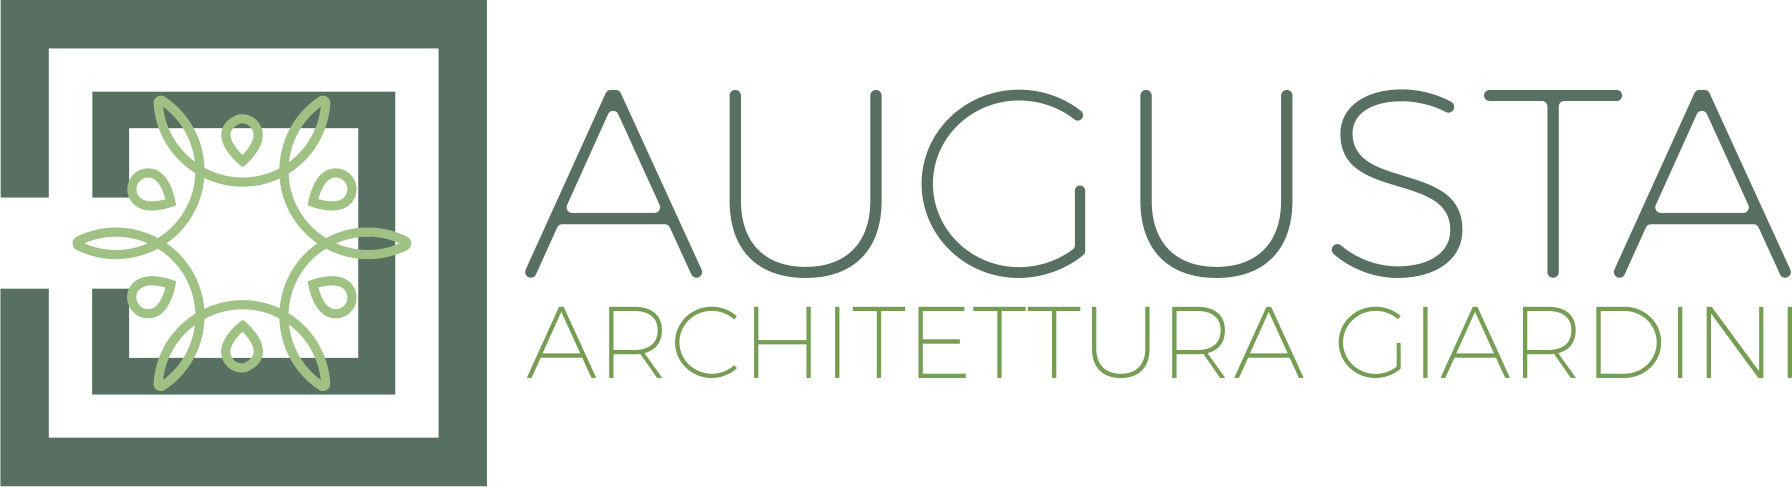 Augusta Architettura Giardini Logo